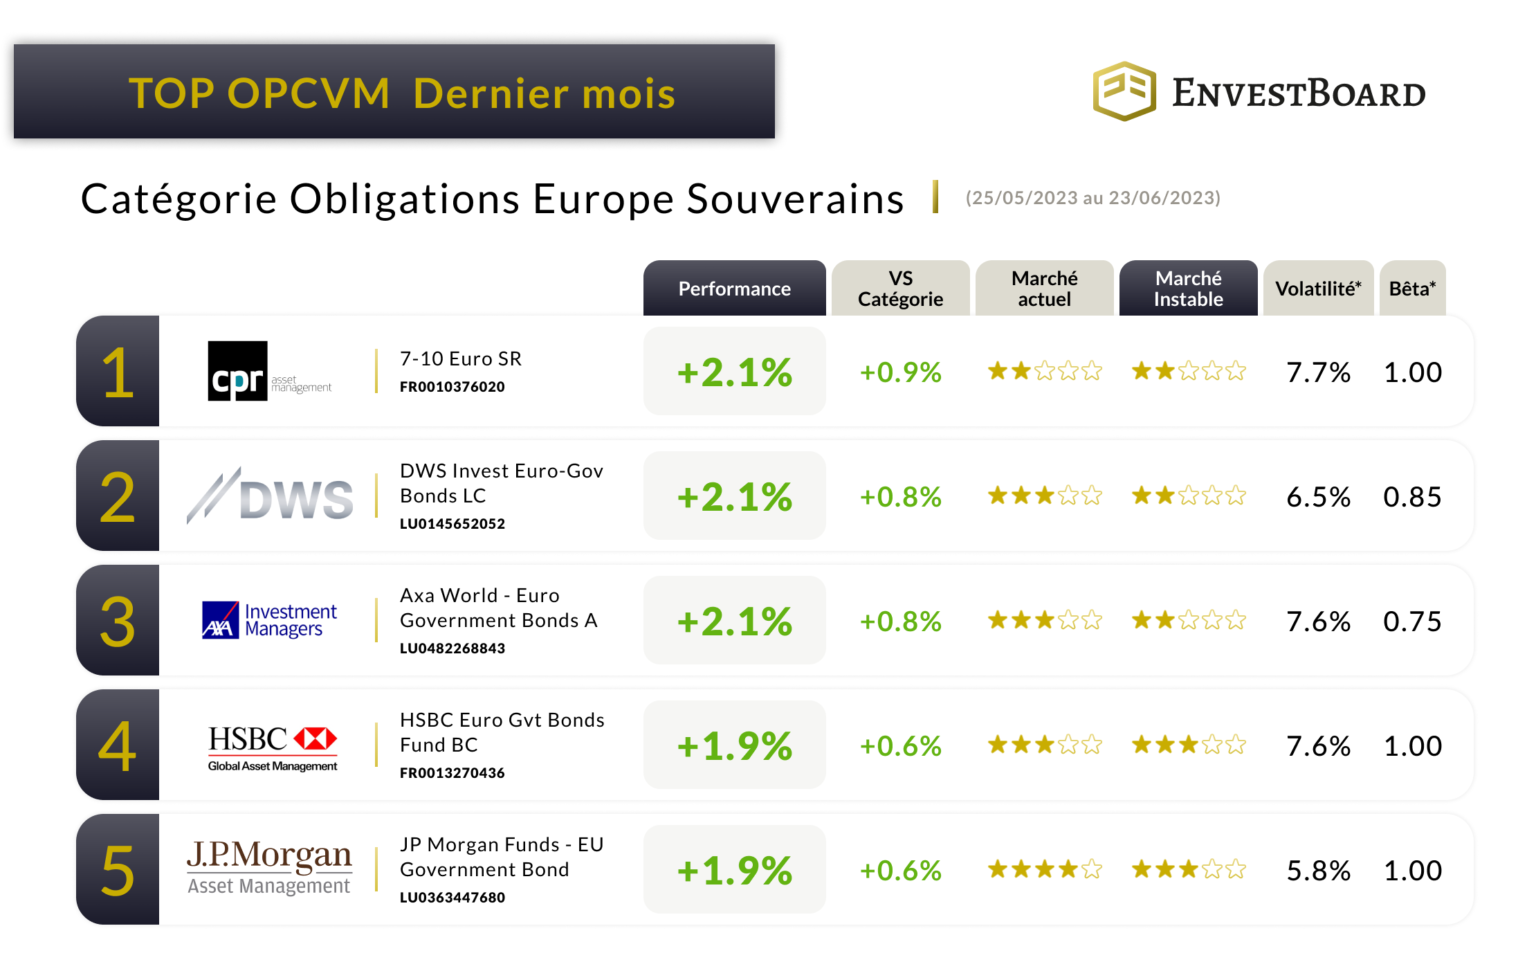 TOP OPCVM dernier mois Obligations Europe Souveraines